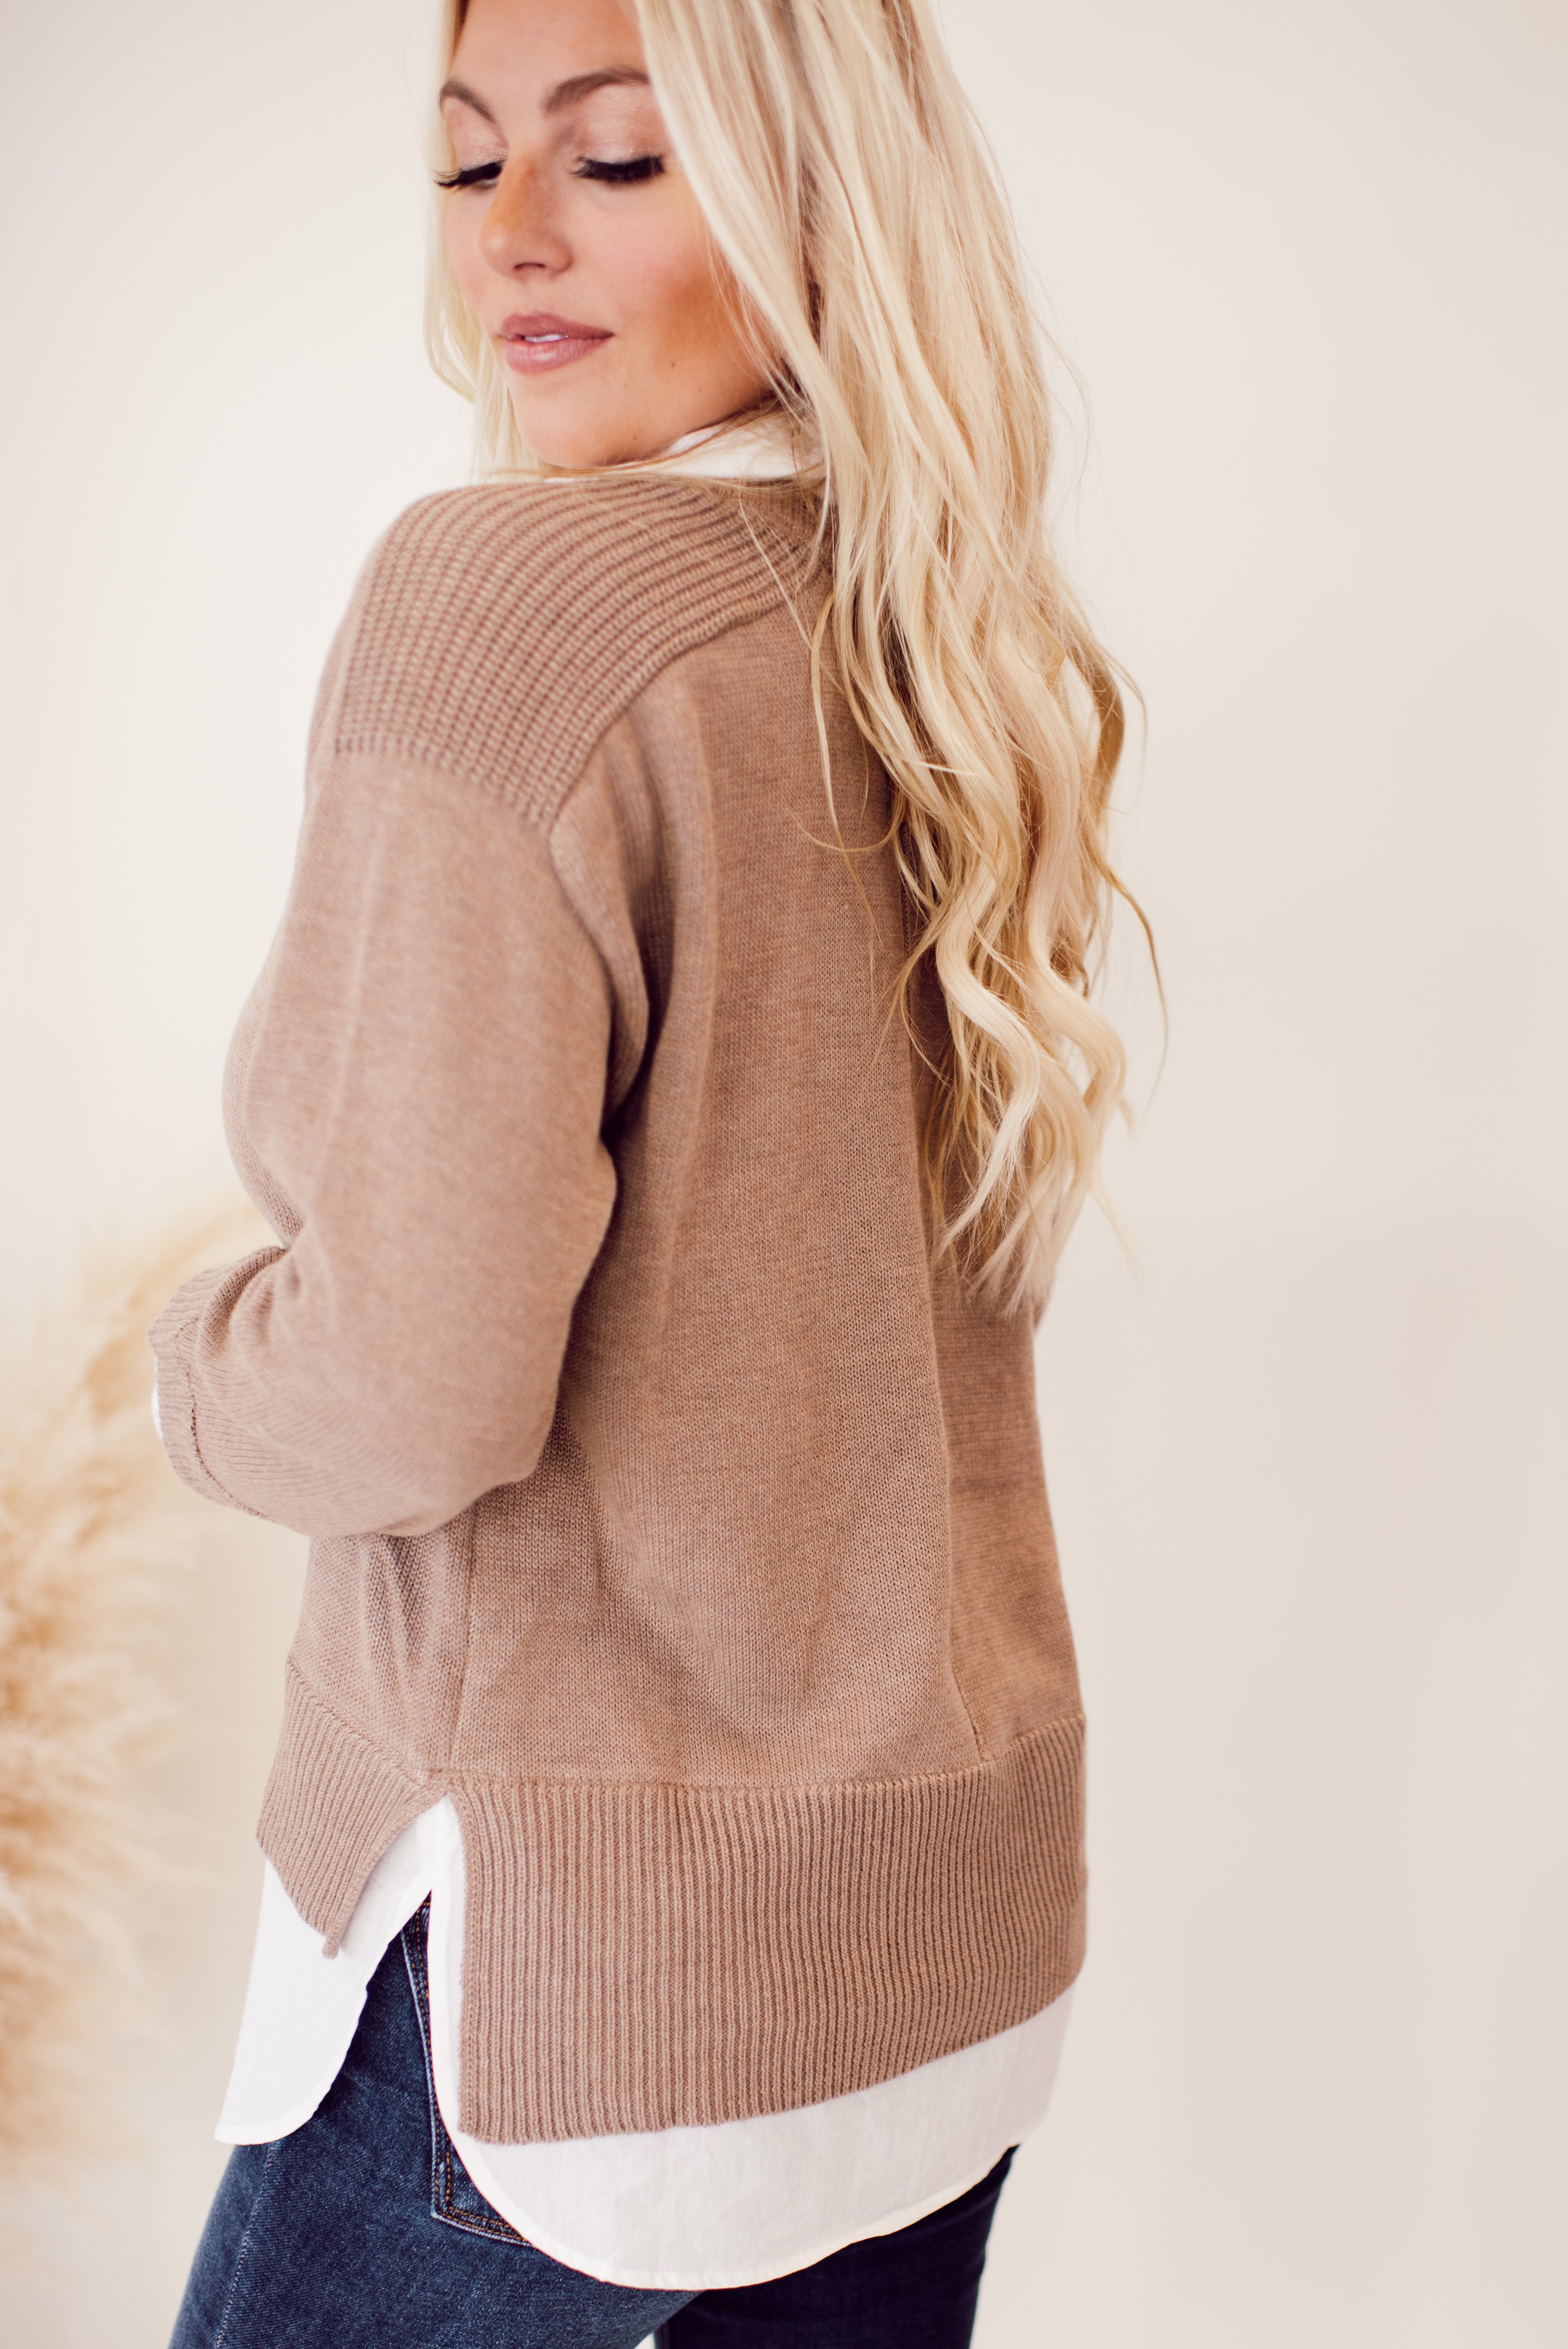 Fall Girly Layered Sweater (Tan)